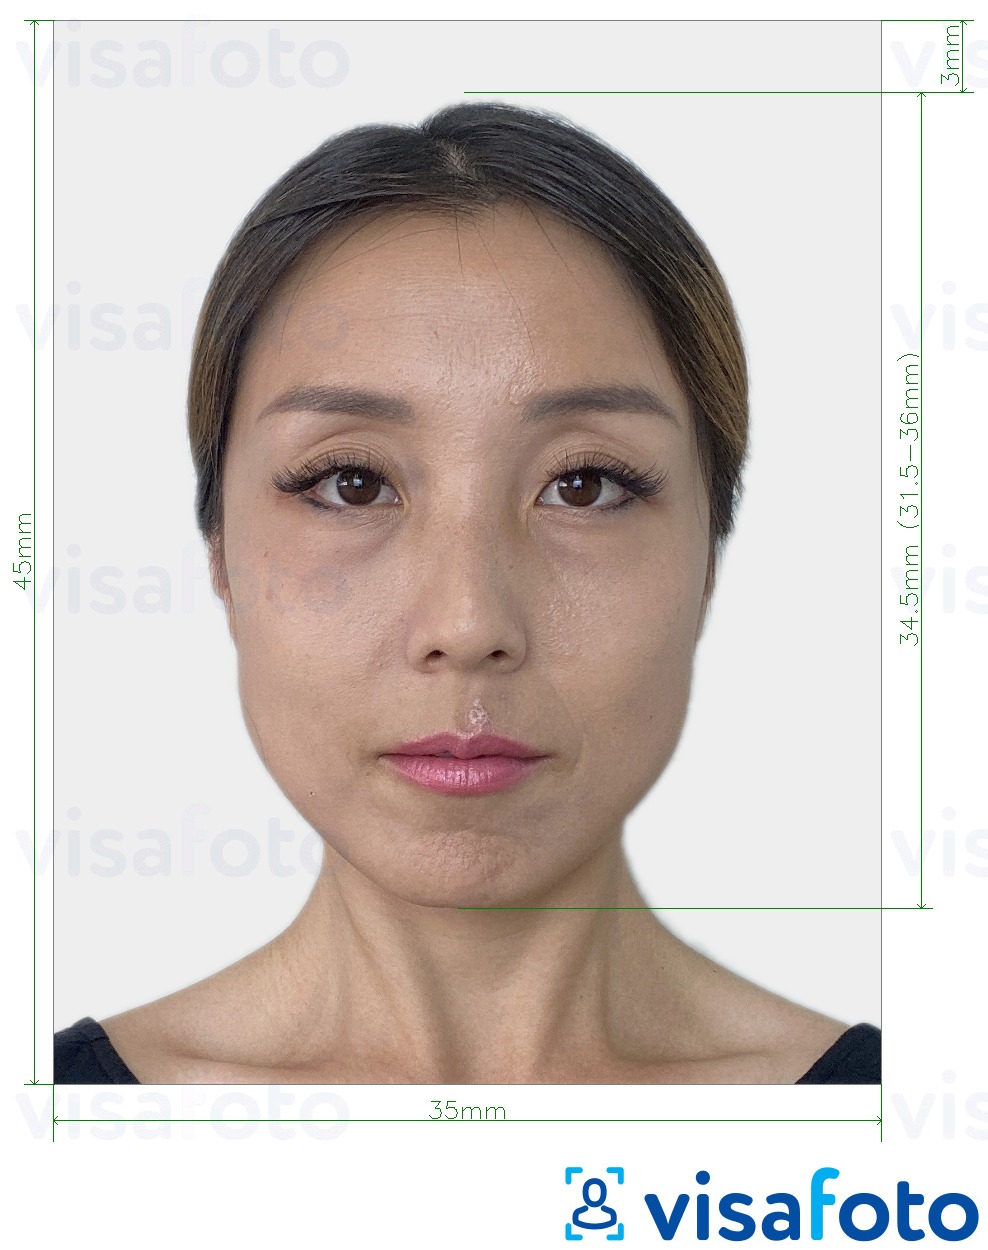 Esempio di foto per Corea del Sud Visa 35x45 mm (3,5x4,5 cm) con specifiche delle dimensioni esatte